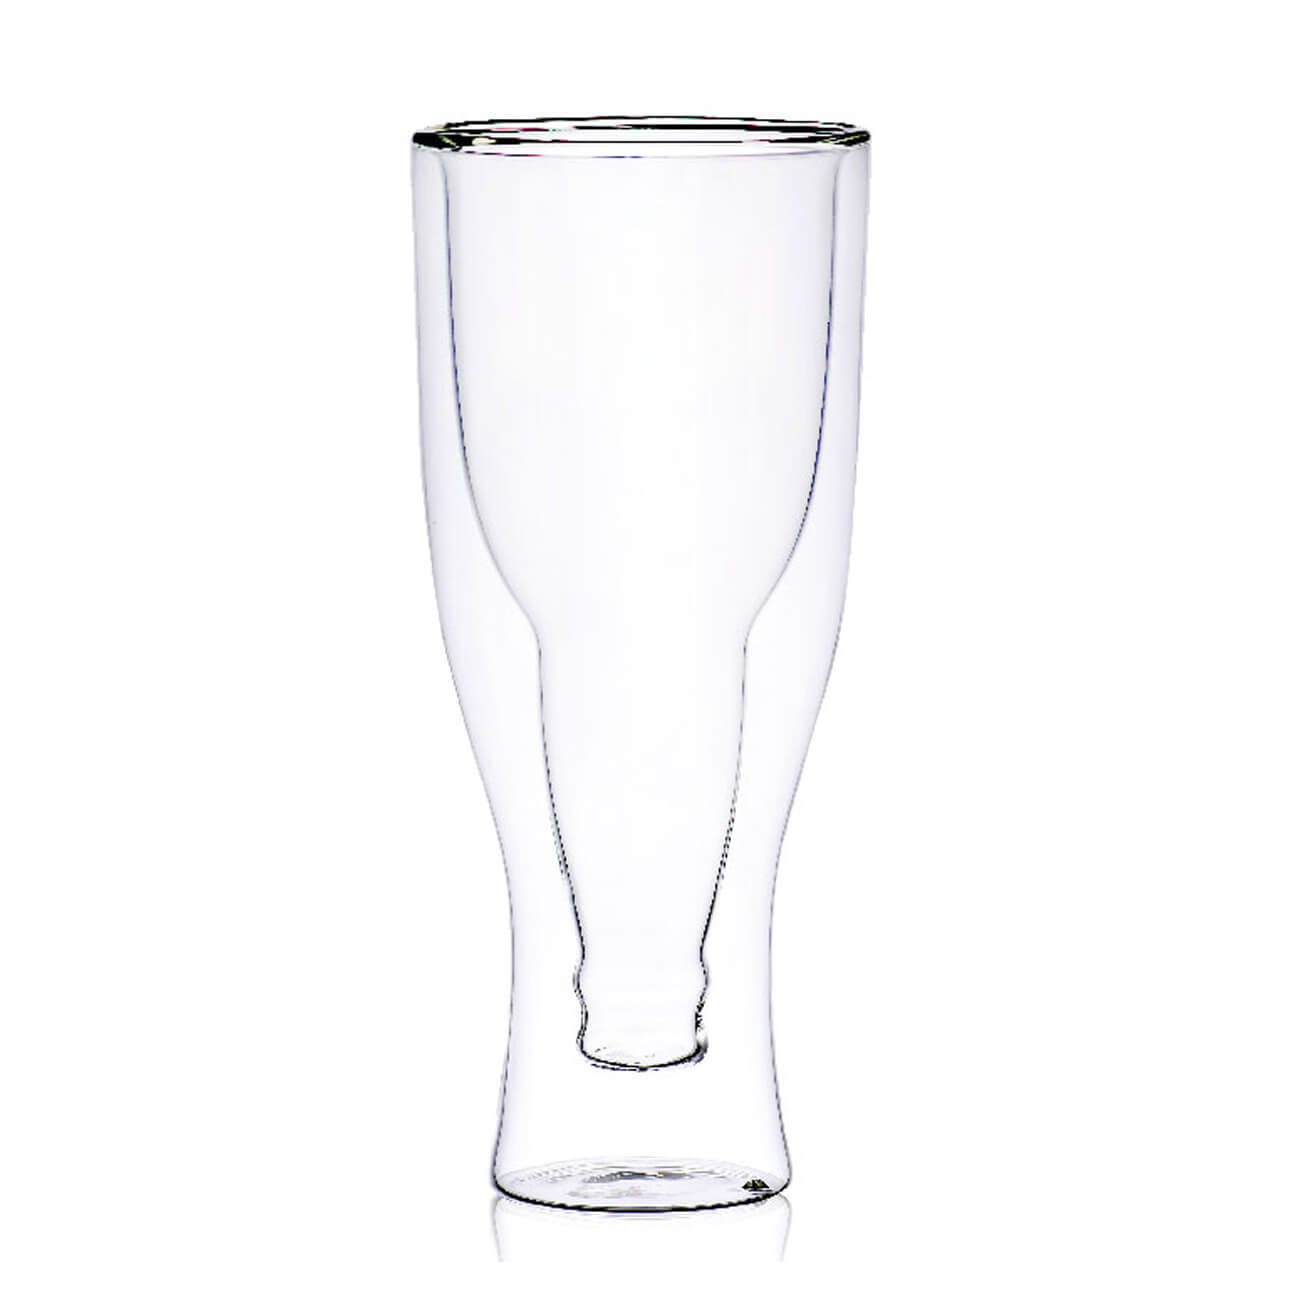 Стакан для пива, 430 мл, стекло Б, Бутылка, Air shape стакан для пива luminarc тюлип пивные страны q1033 570мл